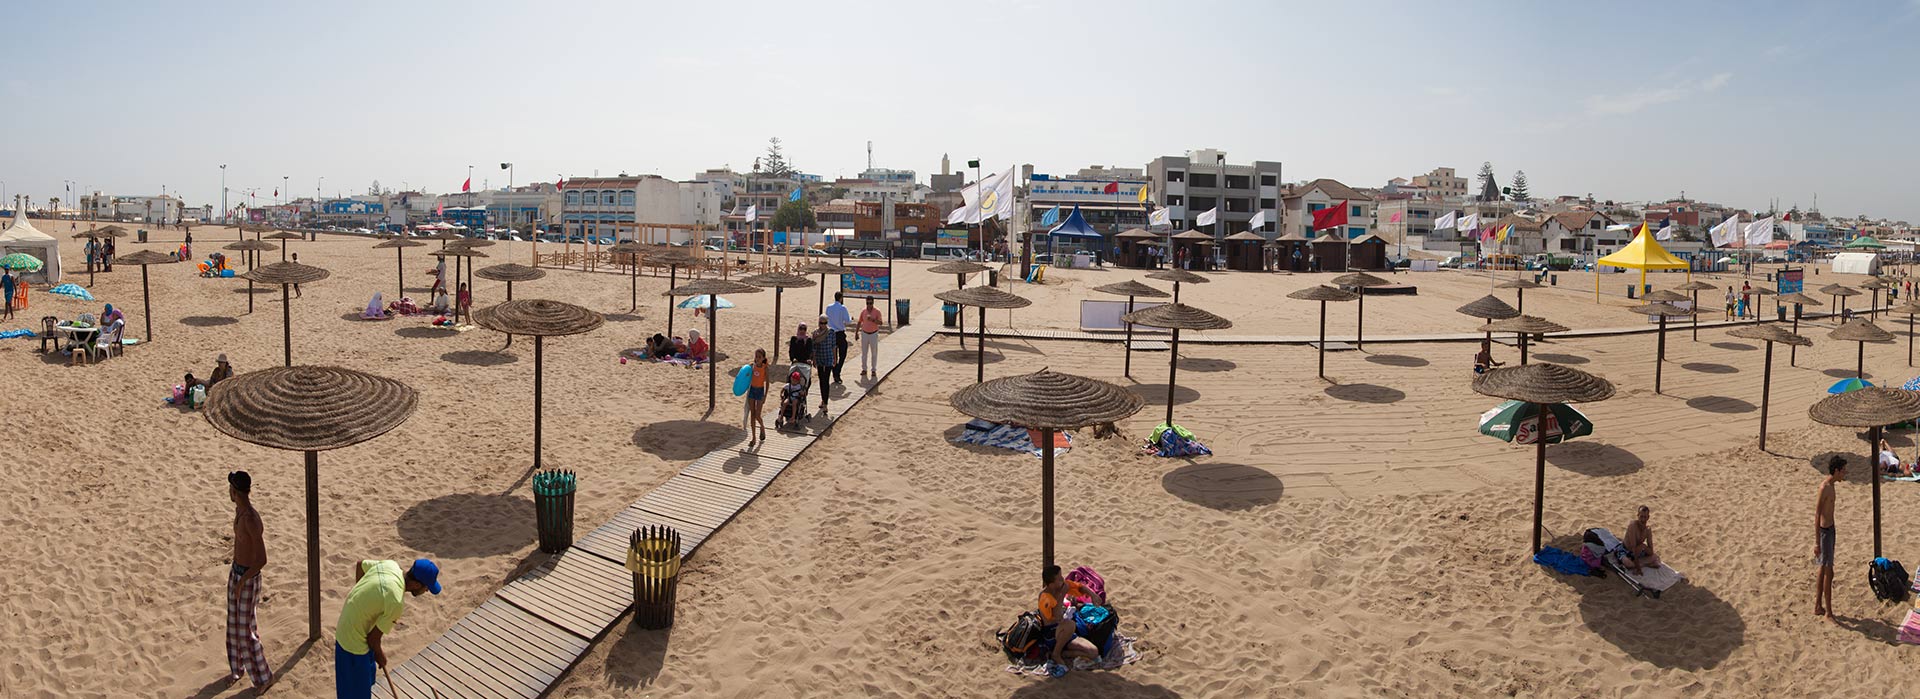 26 avril 2016 : La Fondation Mohammed VI pour la Protection de l’Environnement organise  en partenariat avec la Direction Générale des Collectivités Locales une formationpour les responsables techniques locaux chargés de  la gestion des plages du Royaume